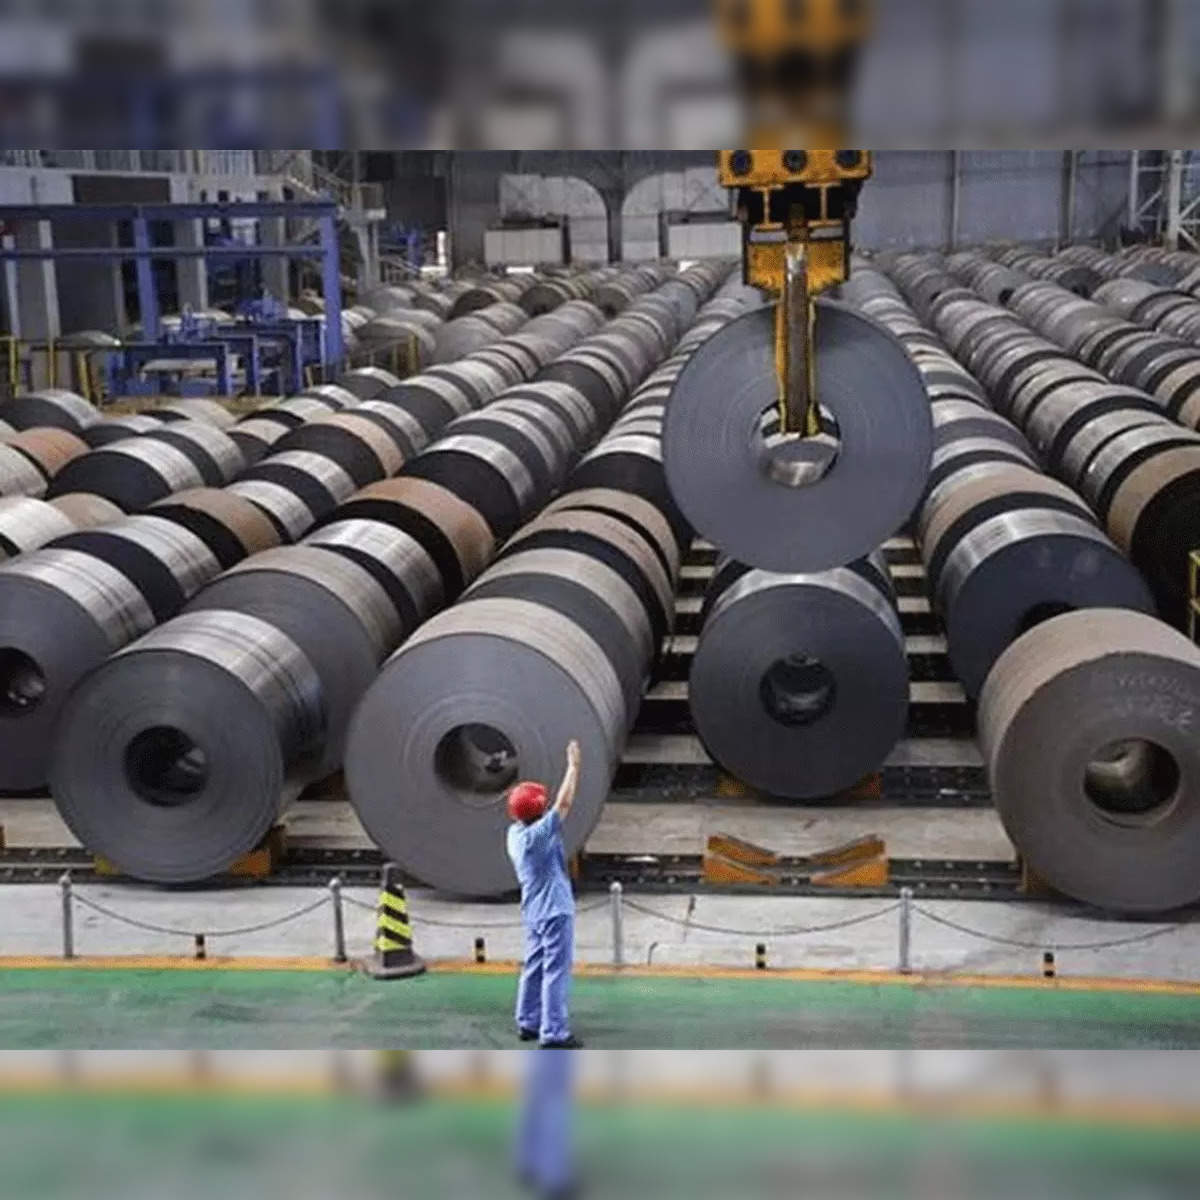 Tata Steel Mission 2025: Lead the Digital Steelmaking